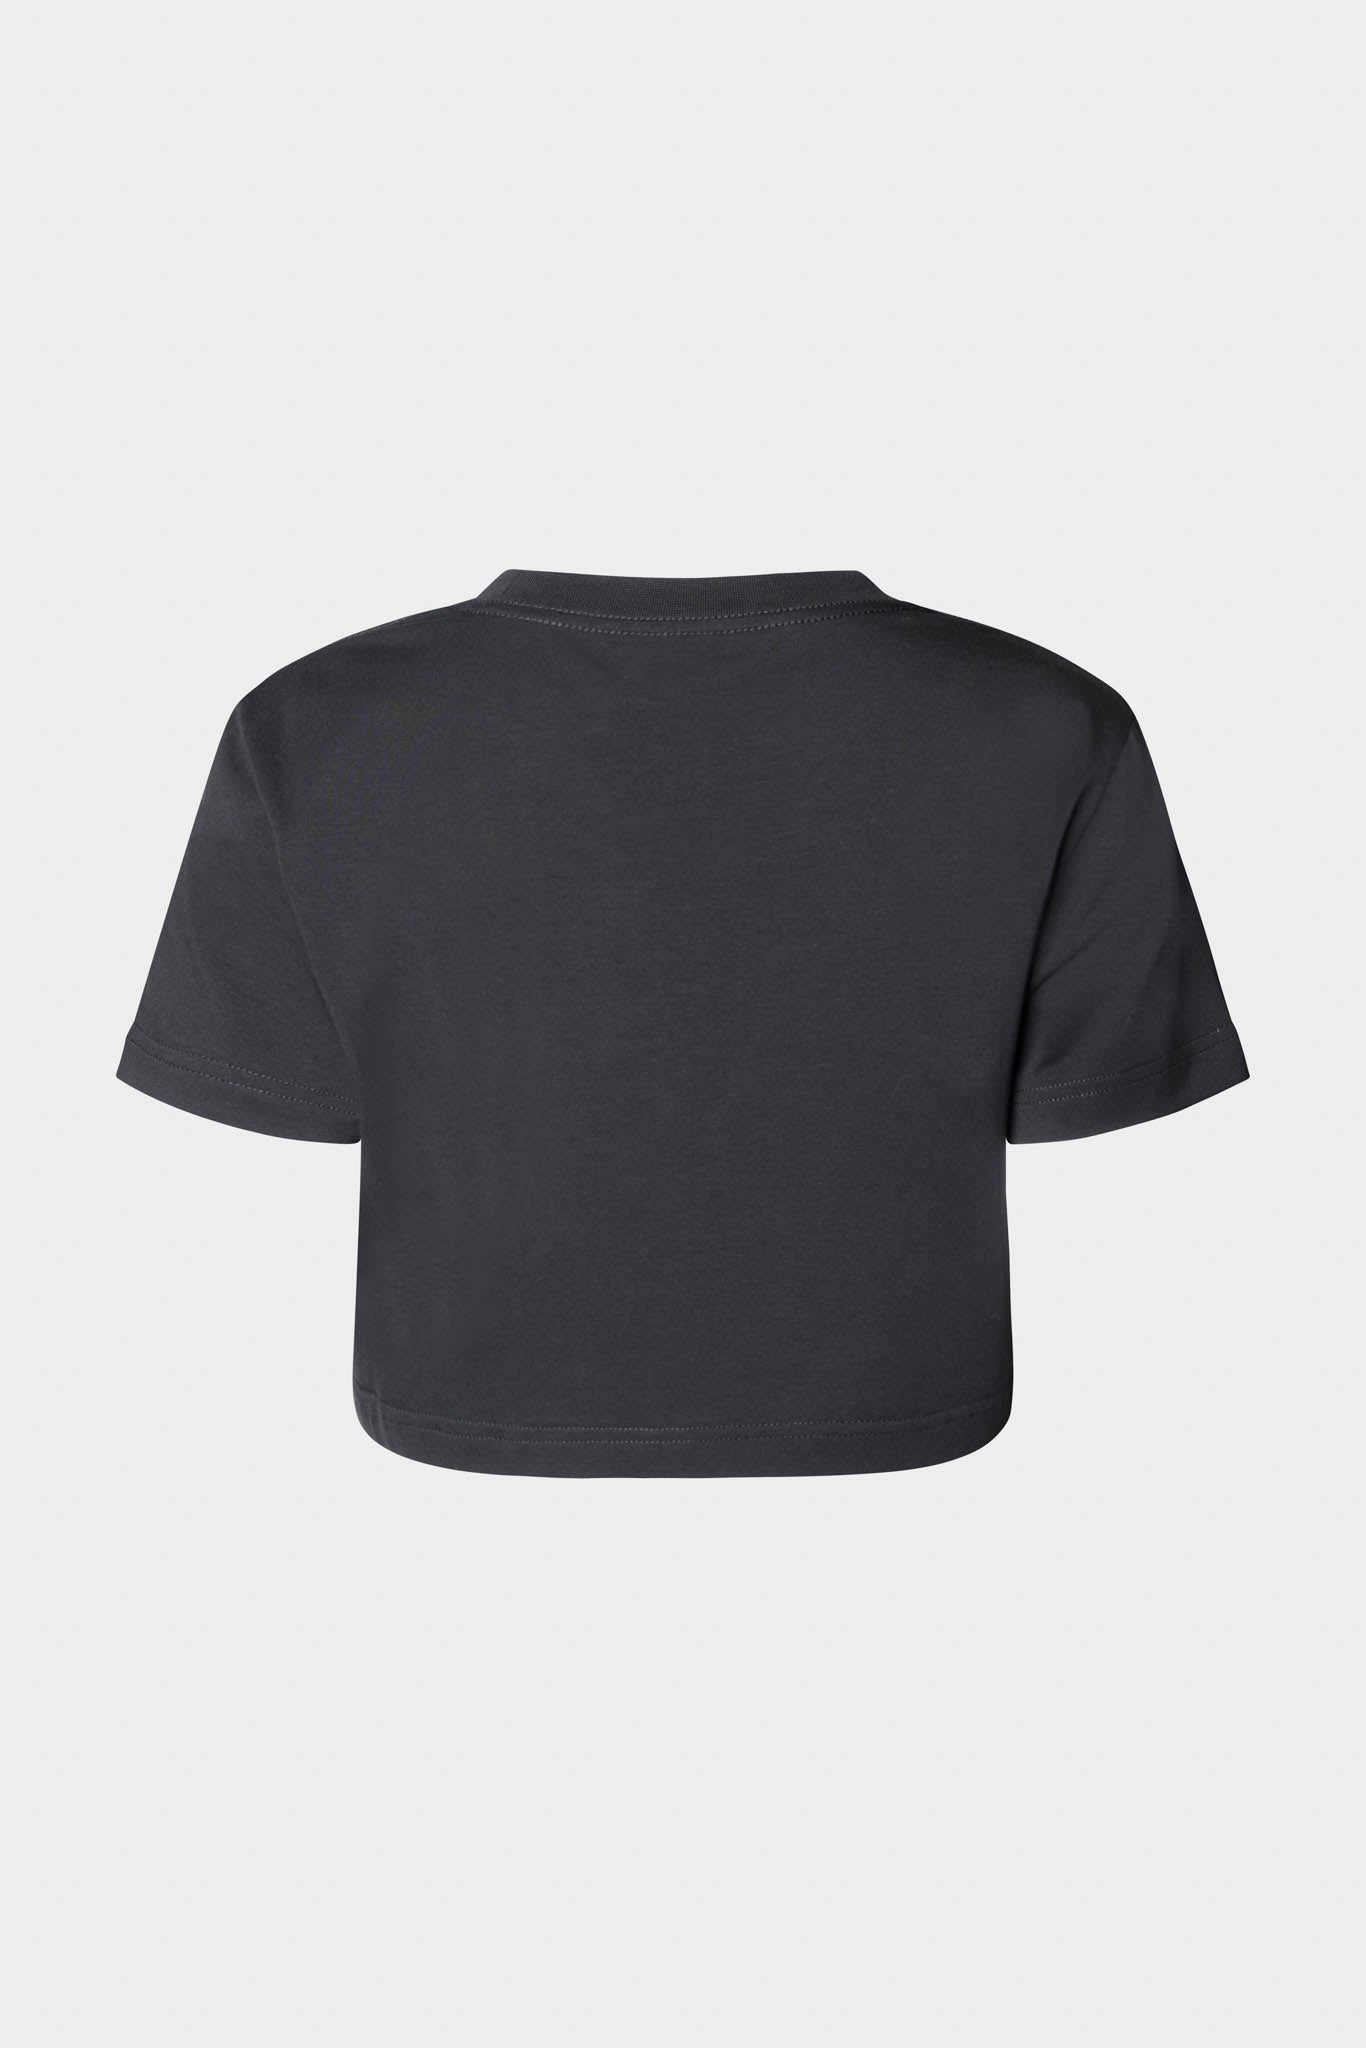 Selectshop FRAME - FENG CHEN WANG Deconstructed T-Shirt Shirts Dubai